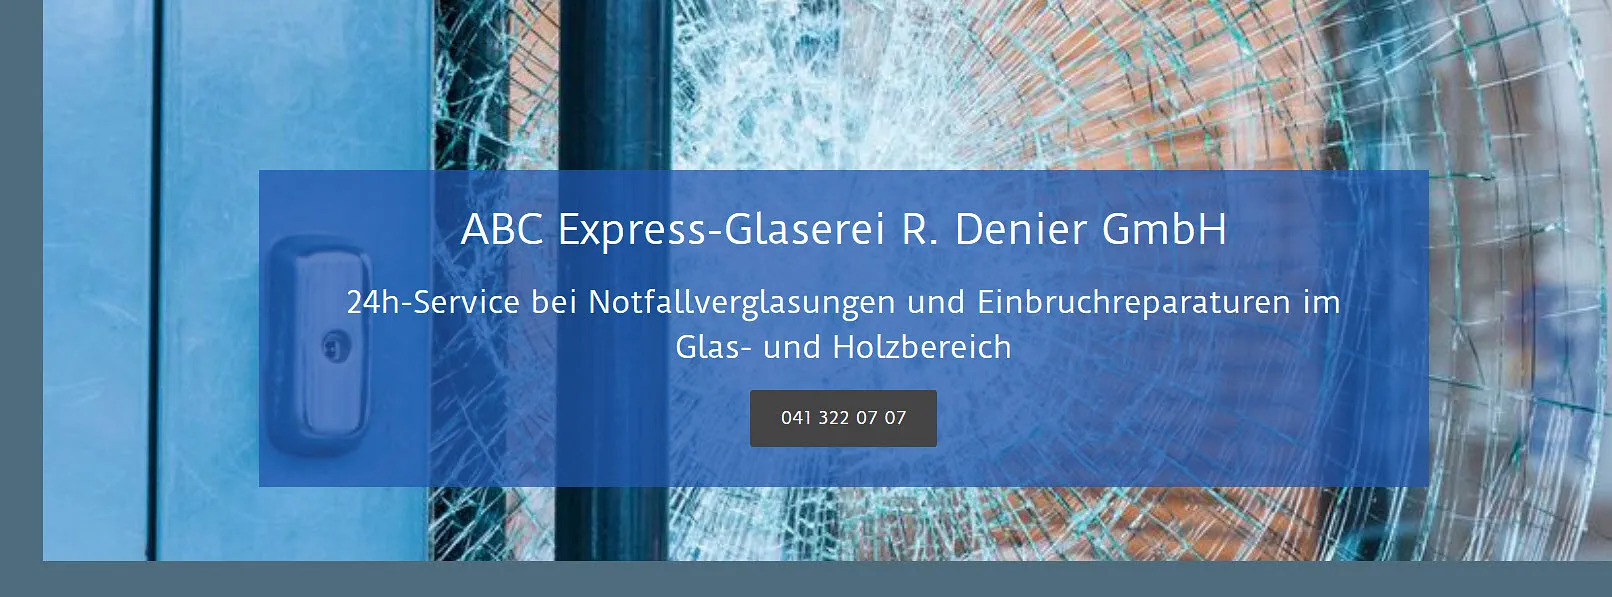 ABC Express-Glaserei R. Denier GmbH